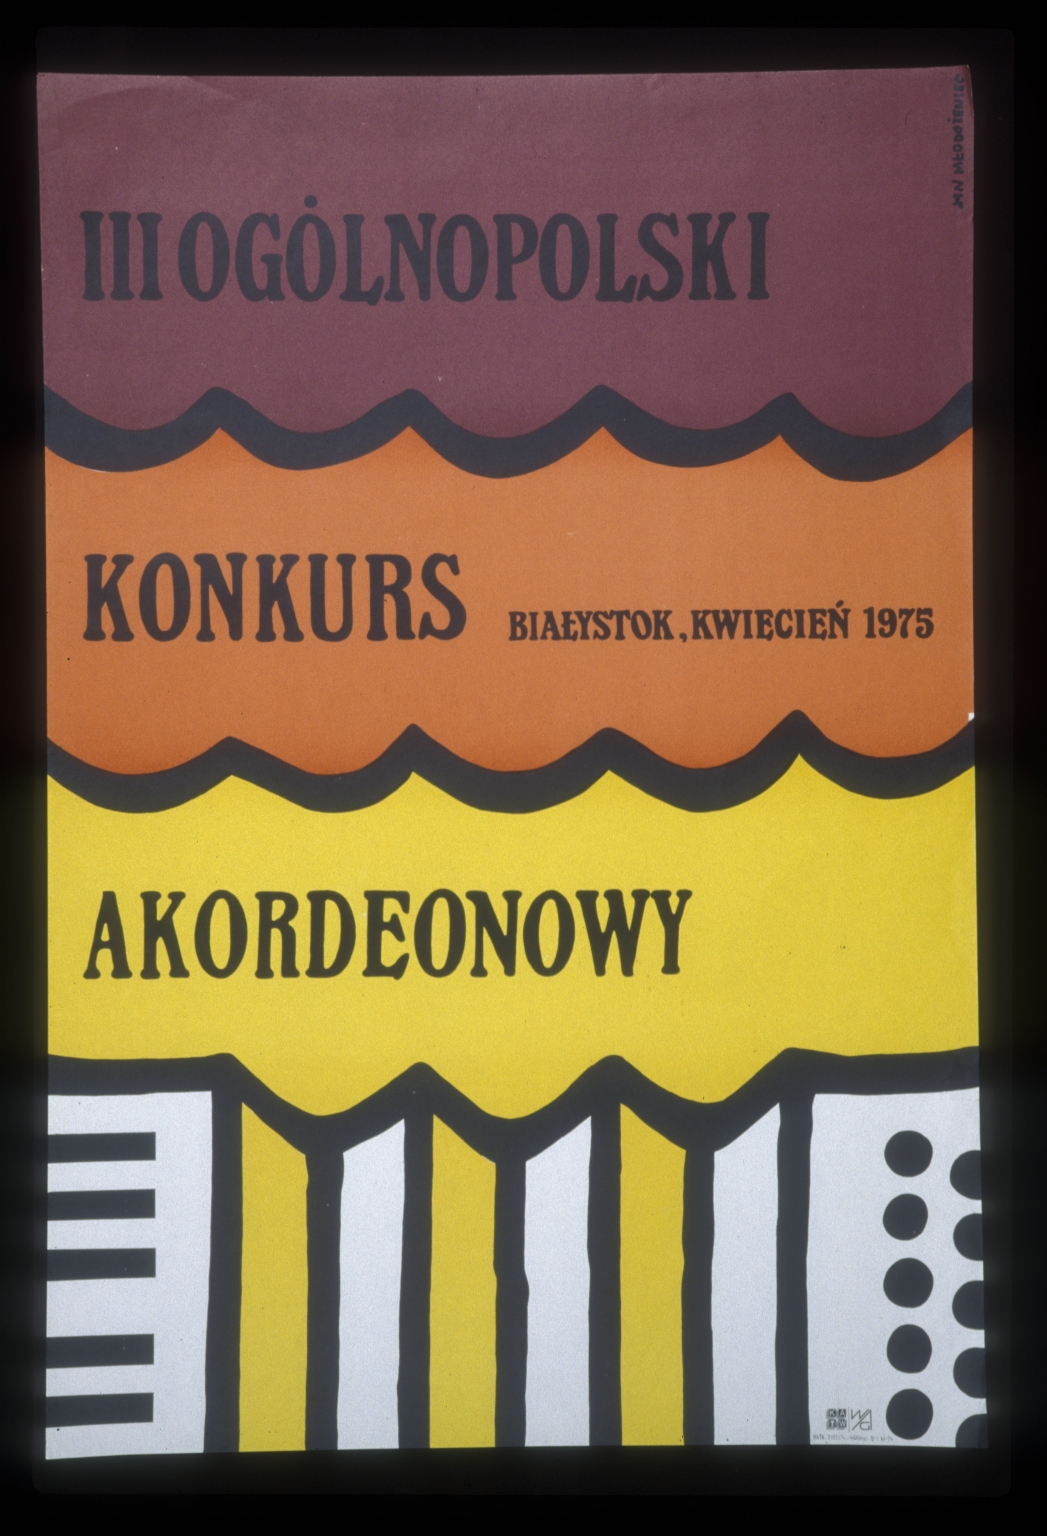 III Ogolnopolski Konkurs Akordenowy, Bialystok, kwiecien1975